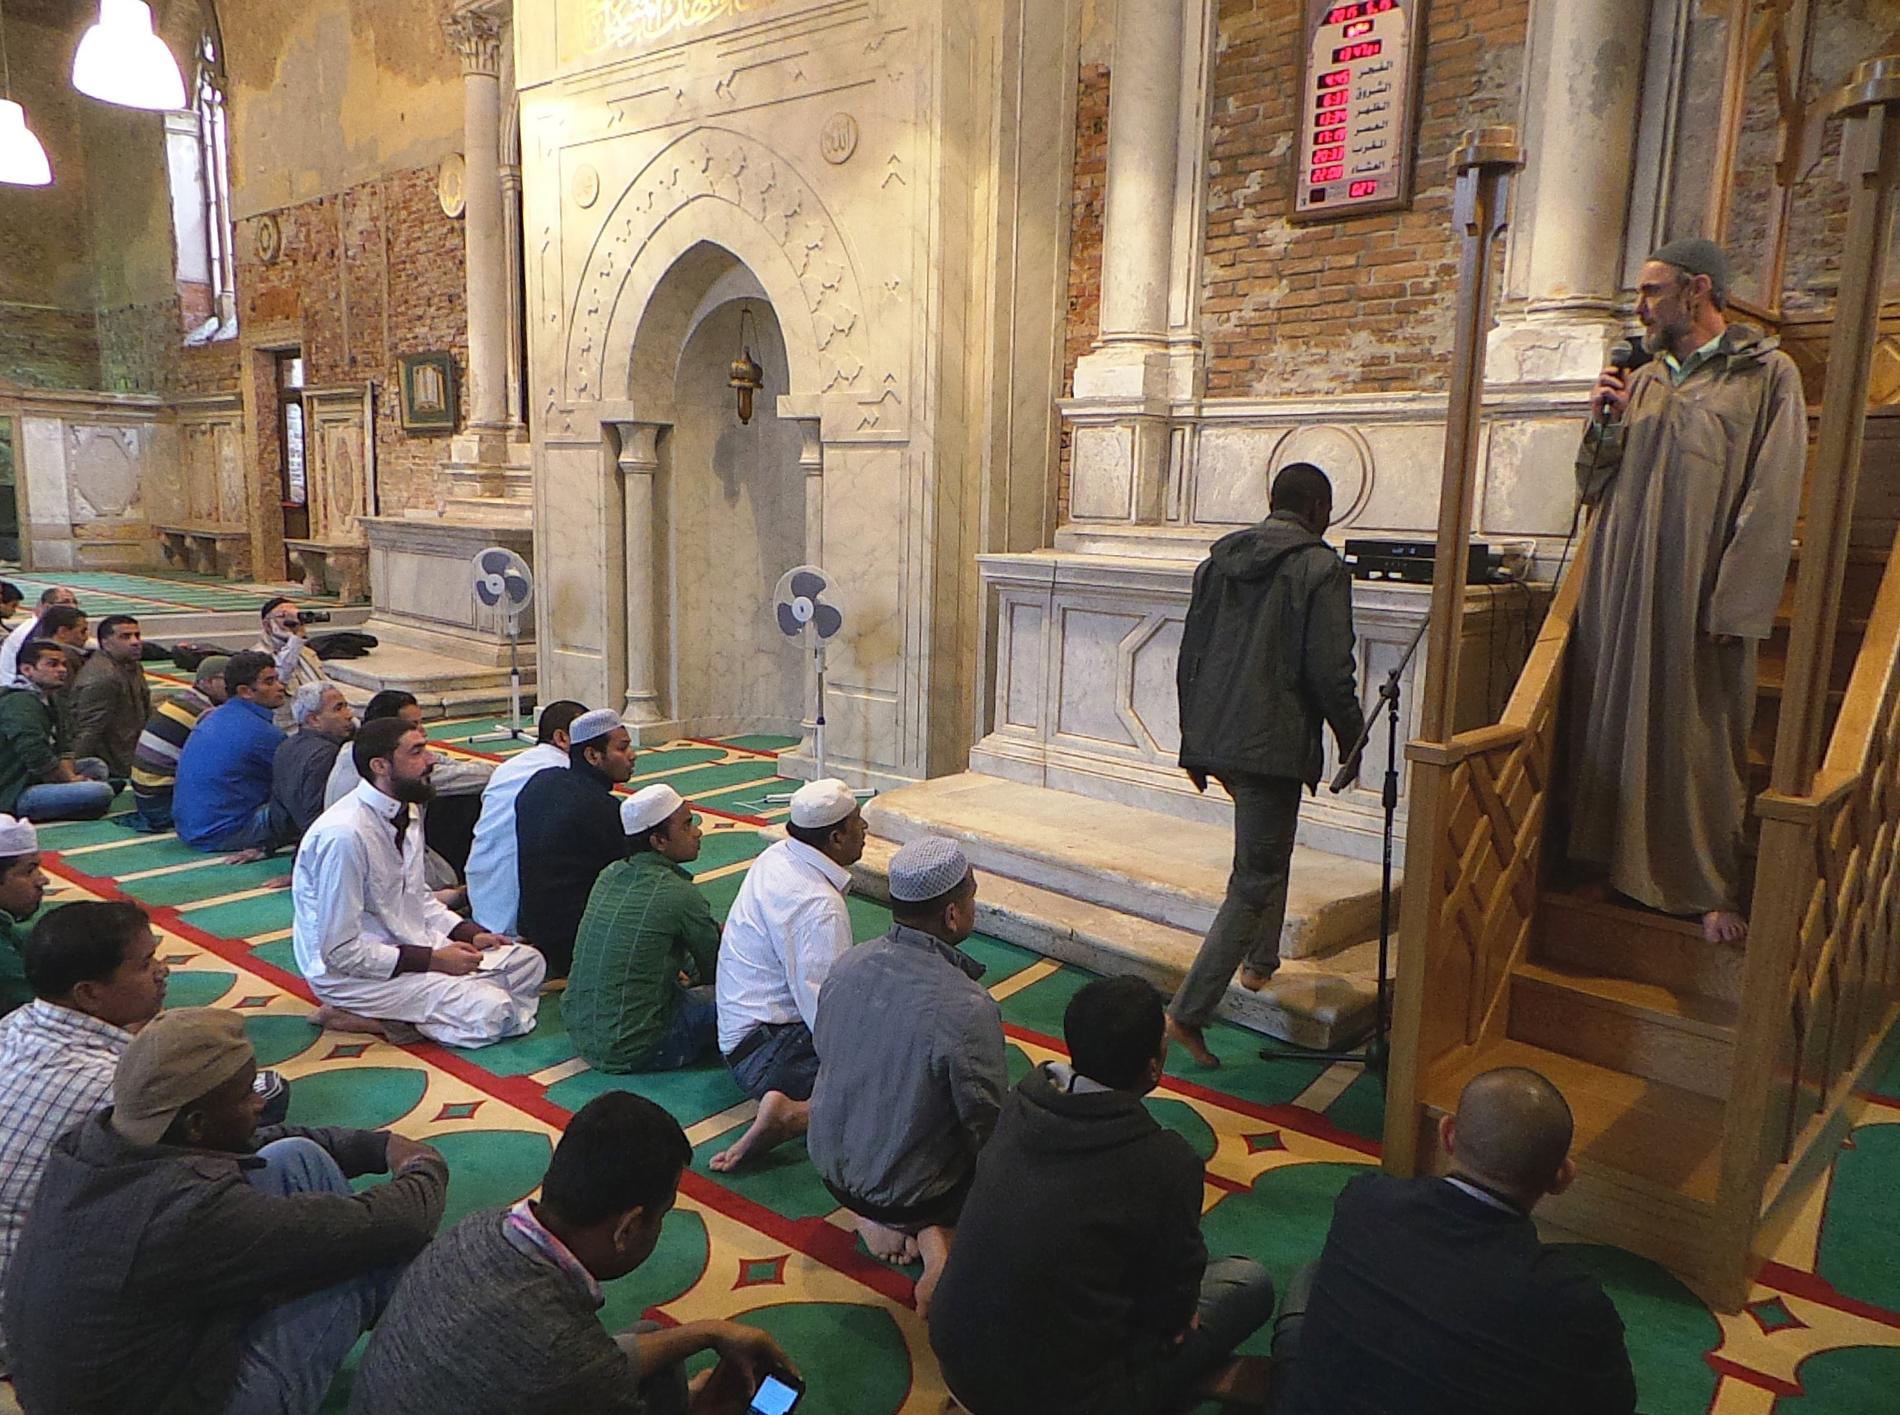 Muslimer samlas för att be i den före detta kyrkan Misericordia i Venedig. Under konstbiennalen har den isländska delegationen gjort ett konstverk i form av en moské i lokalen.